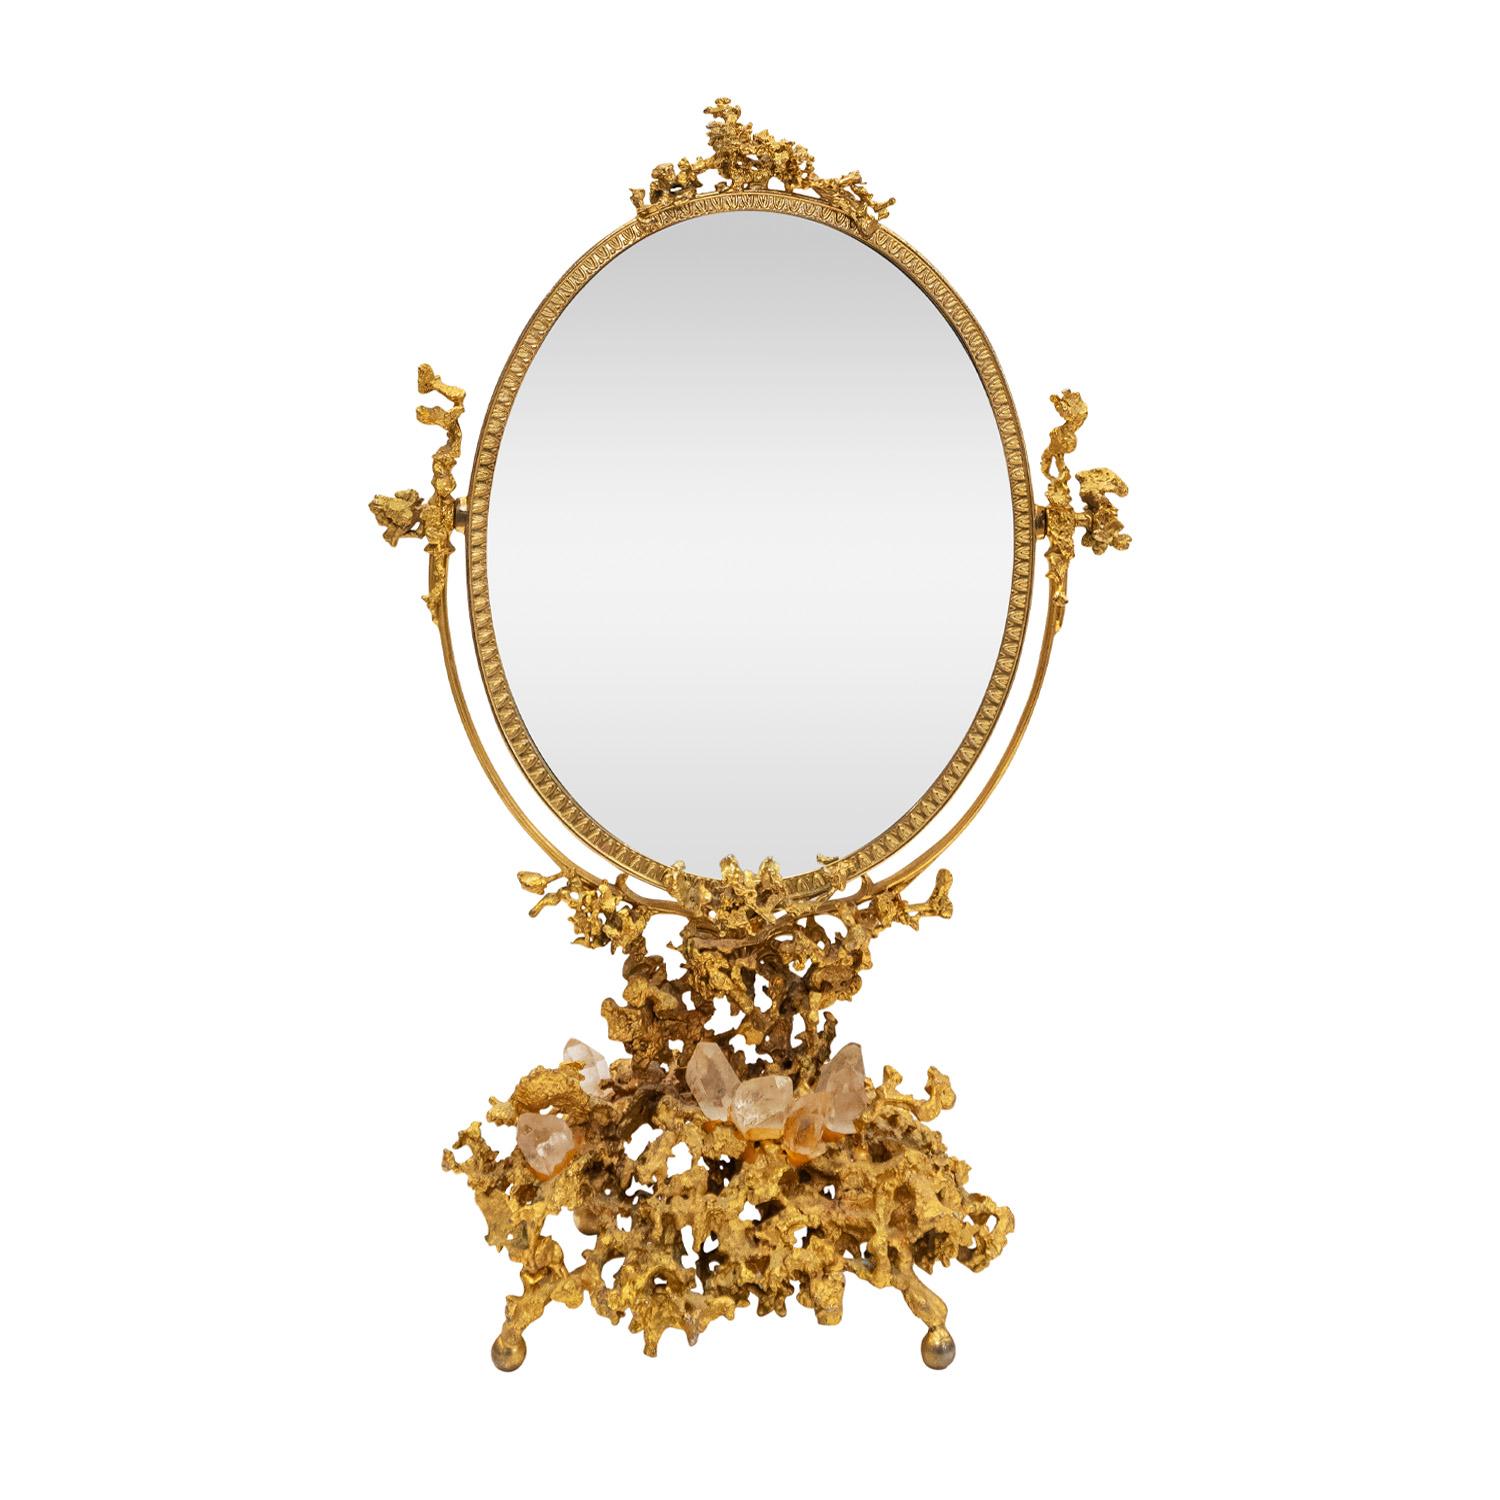 Rare miroir de courtoisie modèle n° 24, design 